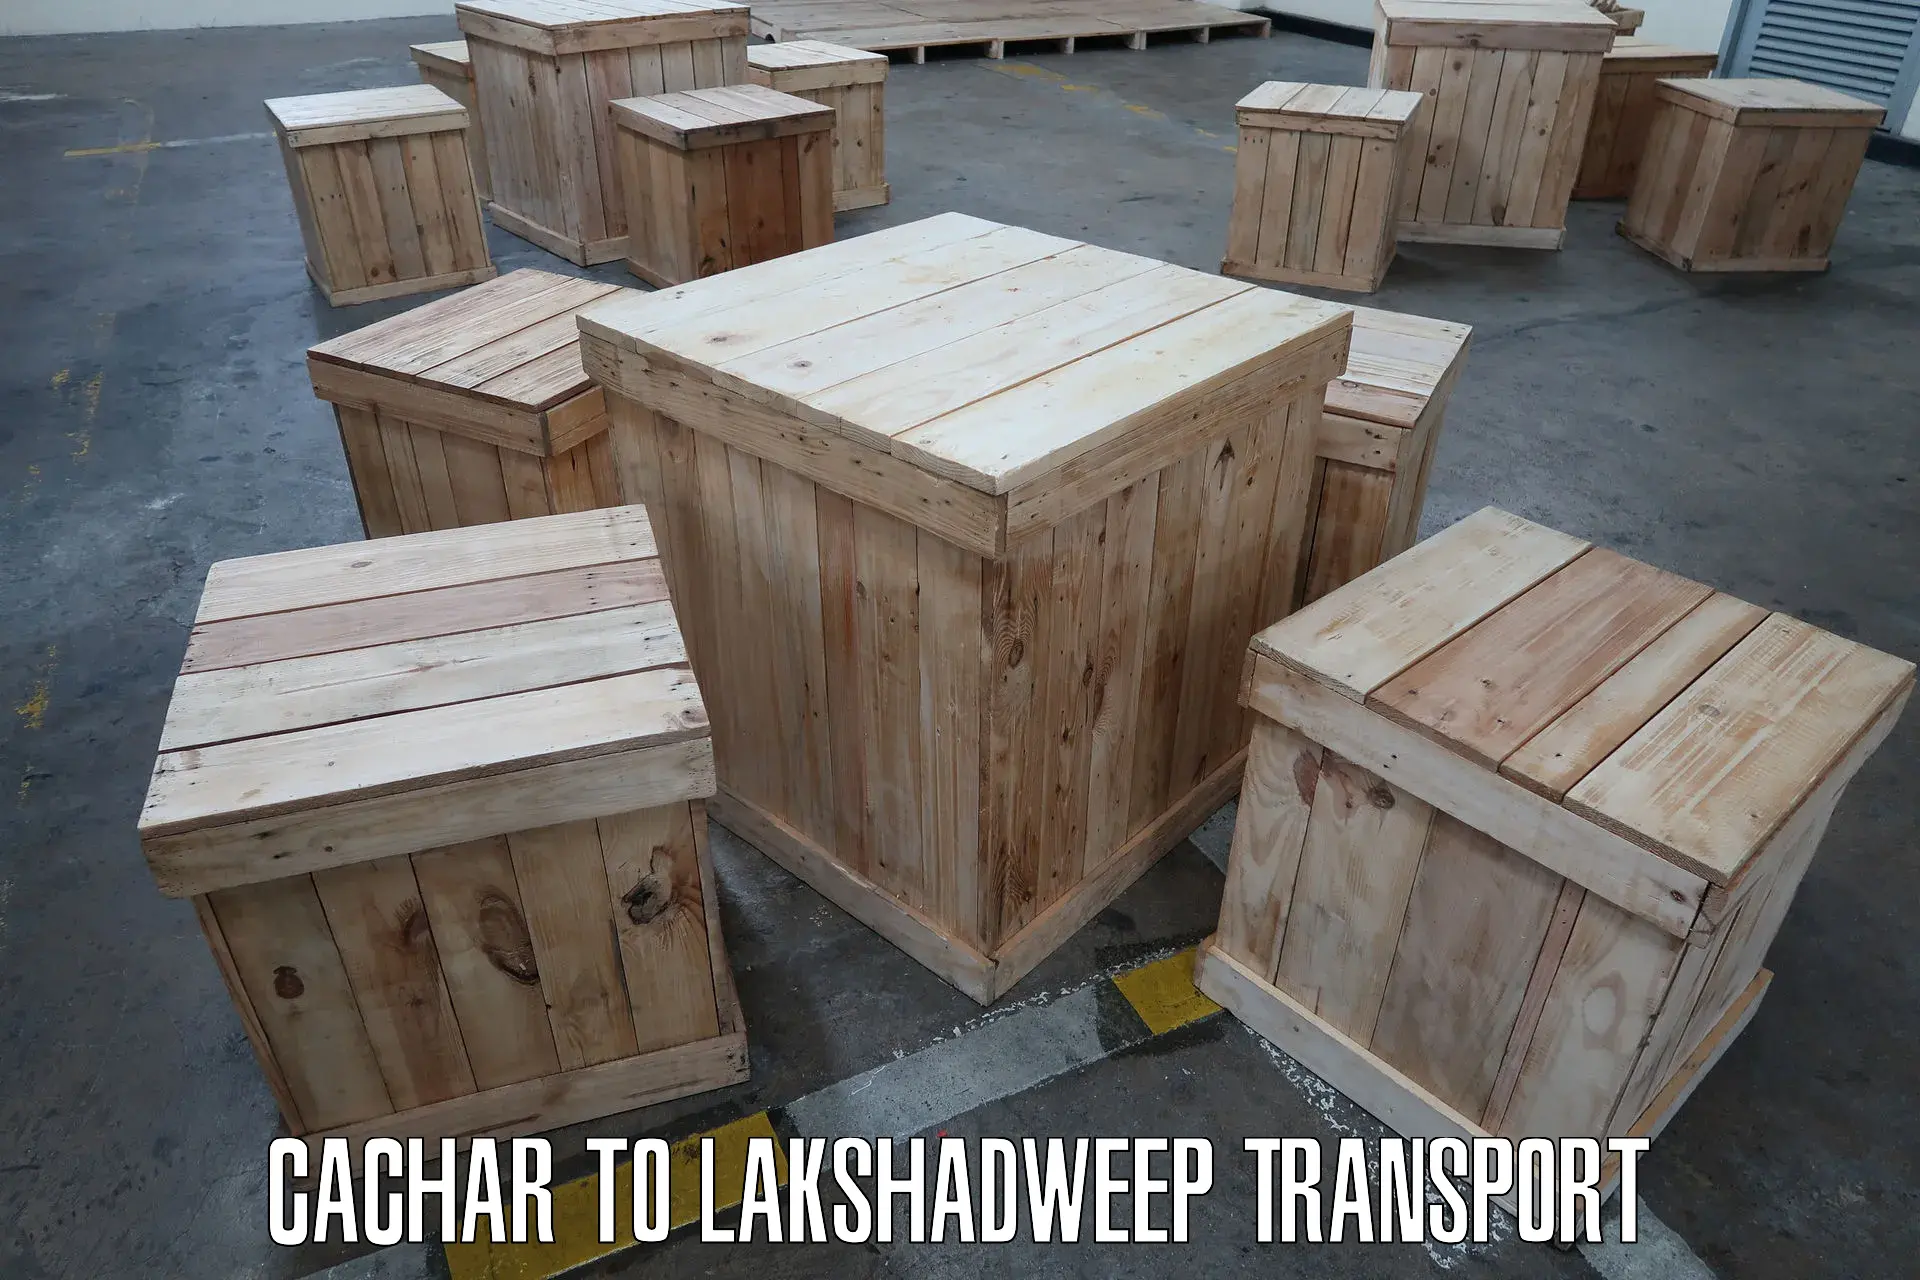 Shipping partner Cachar to Lakshadweep